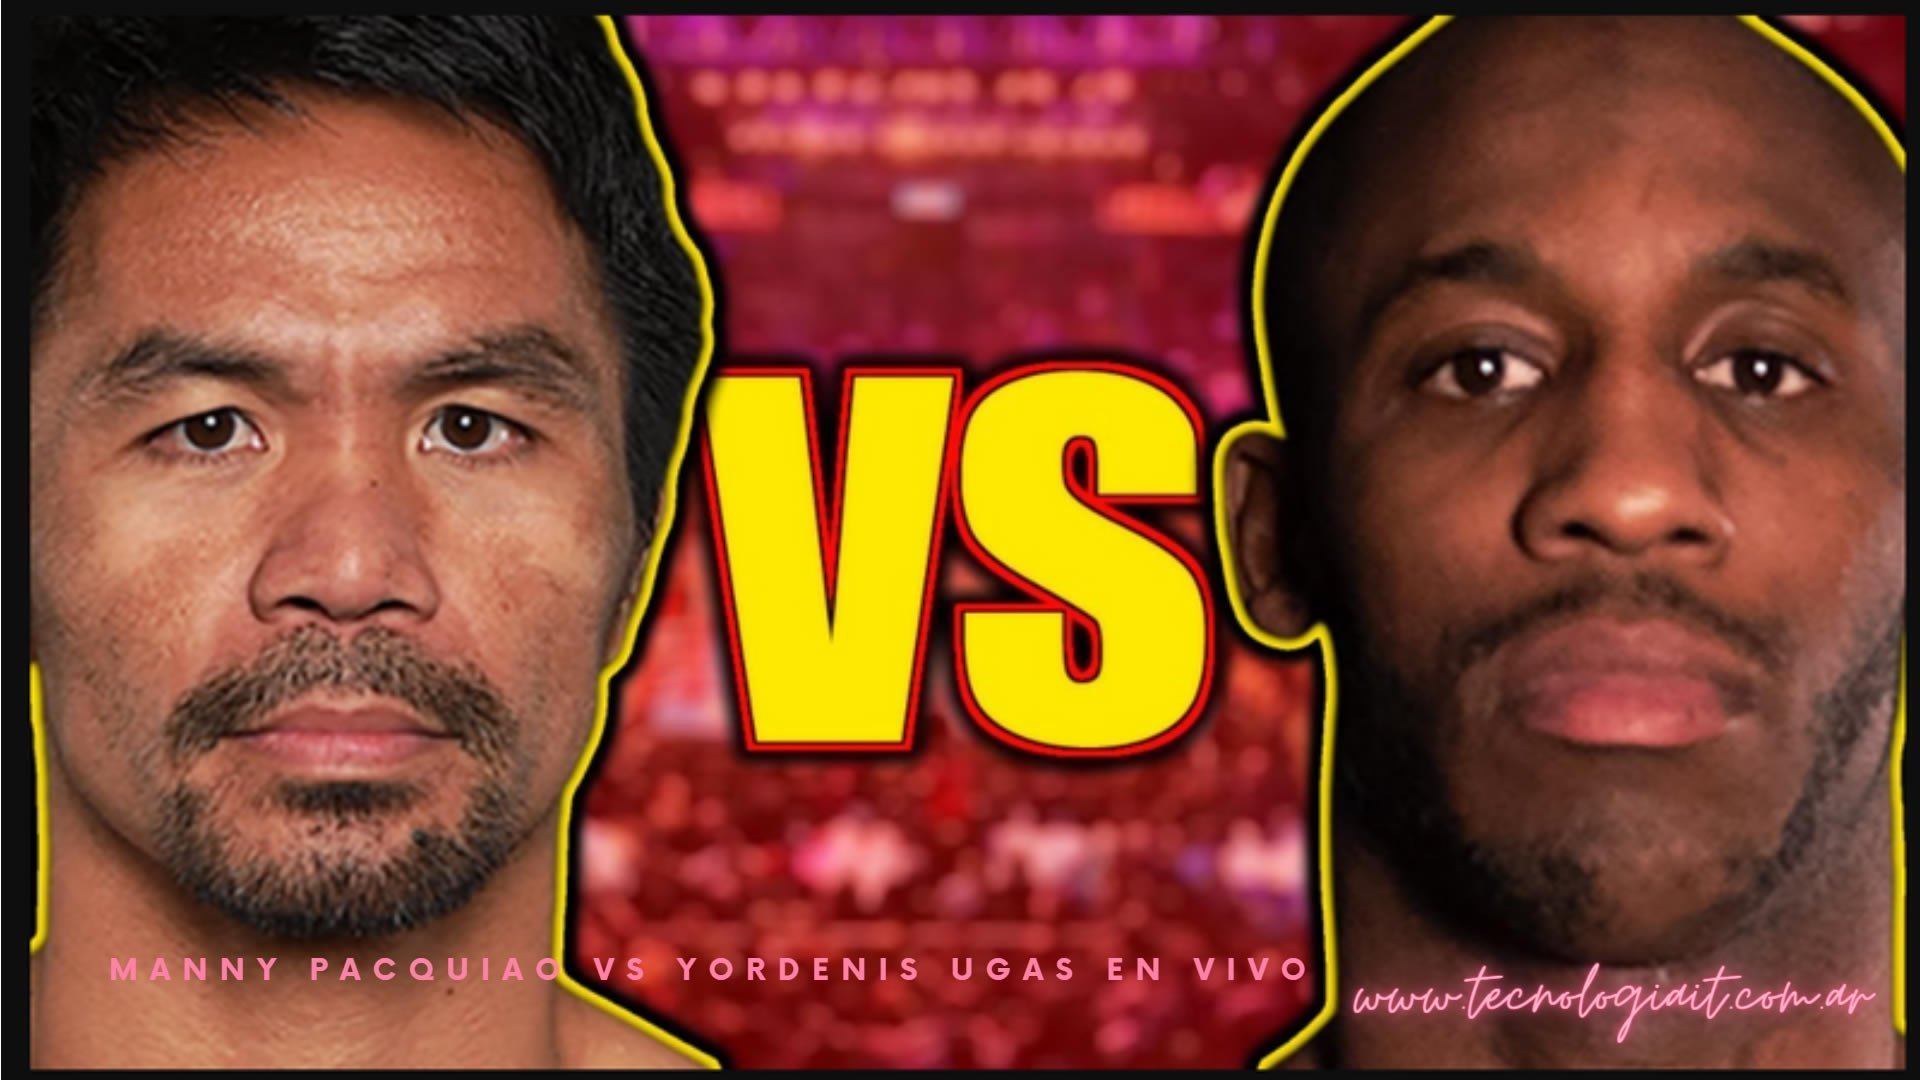 Manny Pacquiao vs Yordenis Ugas Online en Vivo y Directo por Internet